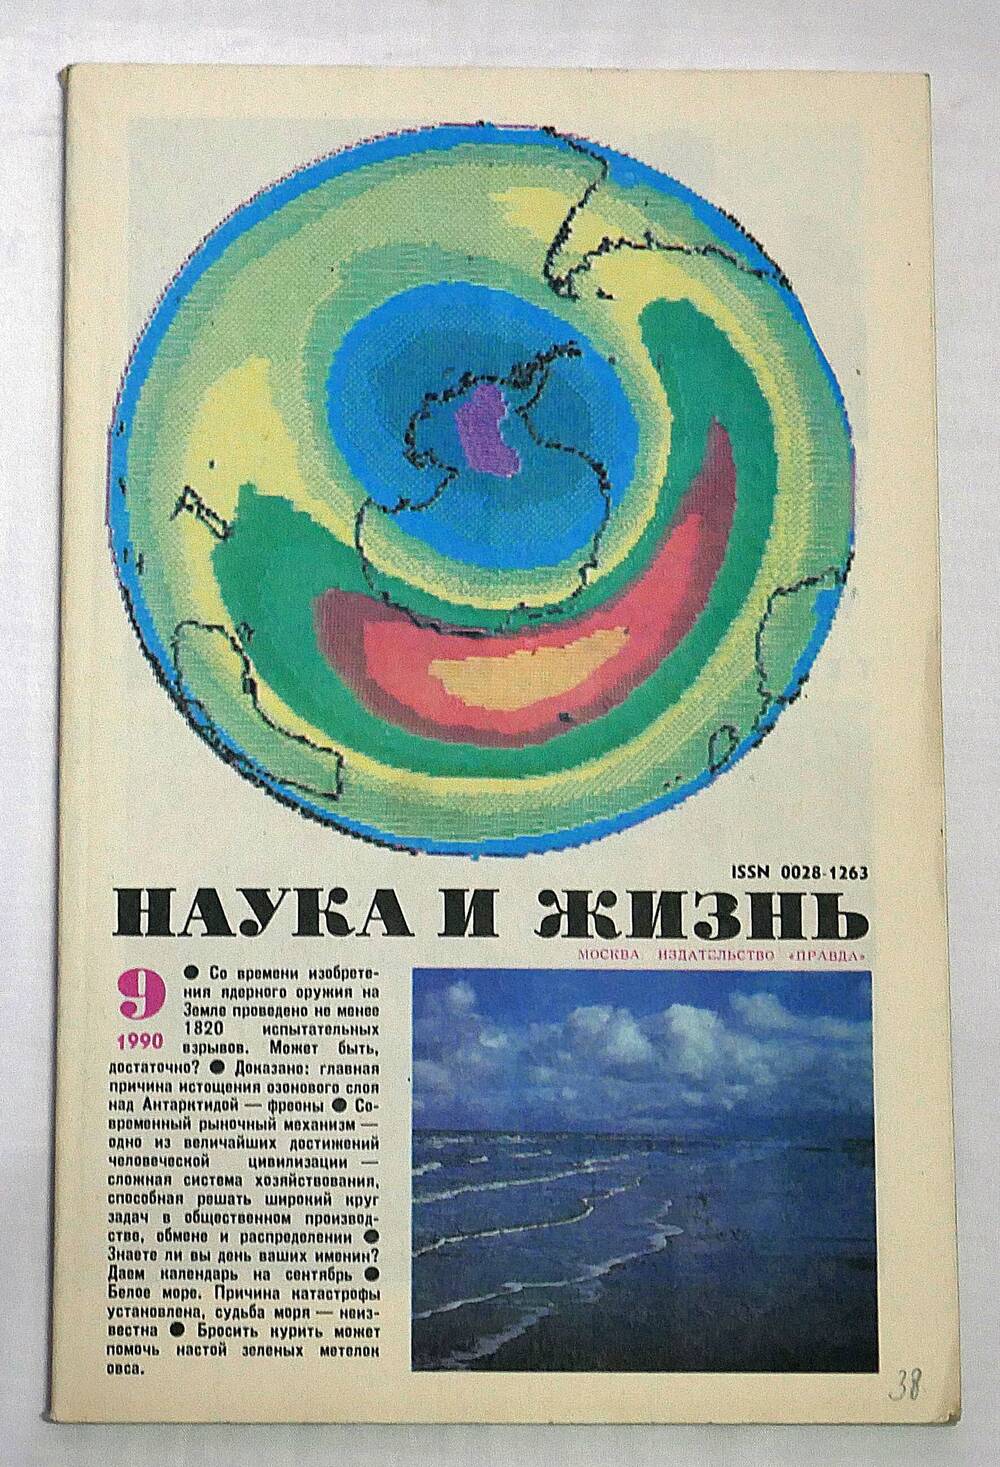 Журнал. Наука и жизнь. № 9 сентябрь 1990 г.